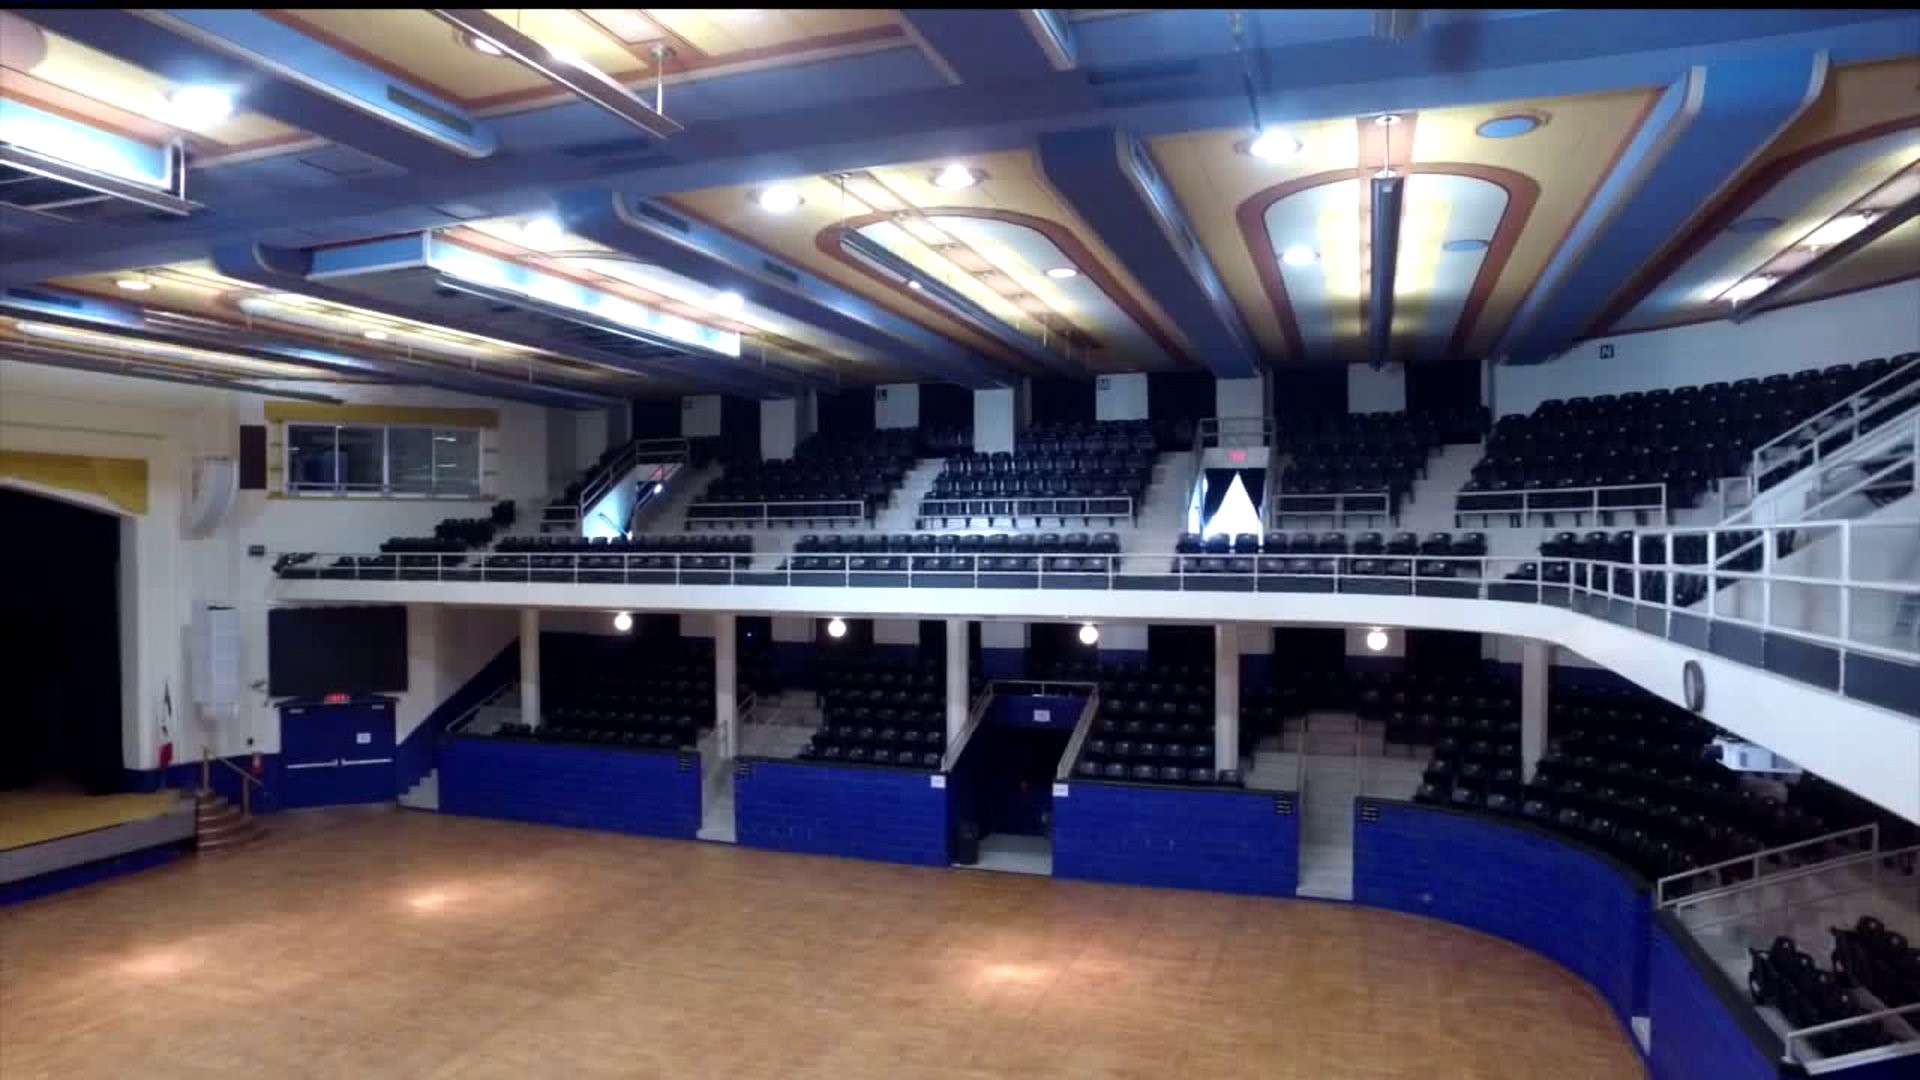 Burlington Memorial Auditorium still under renovation